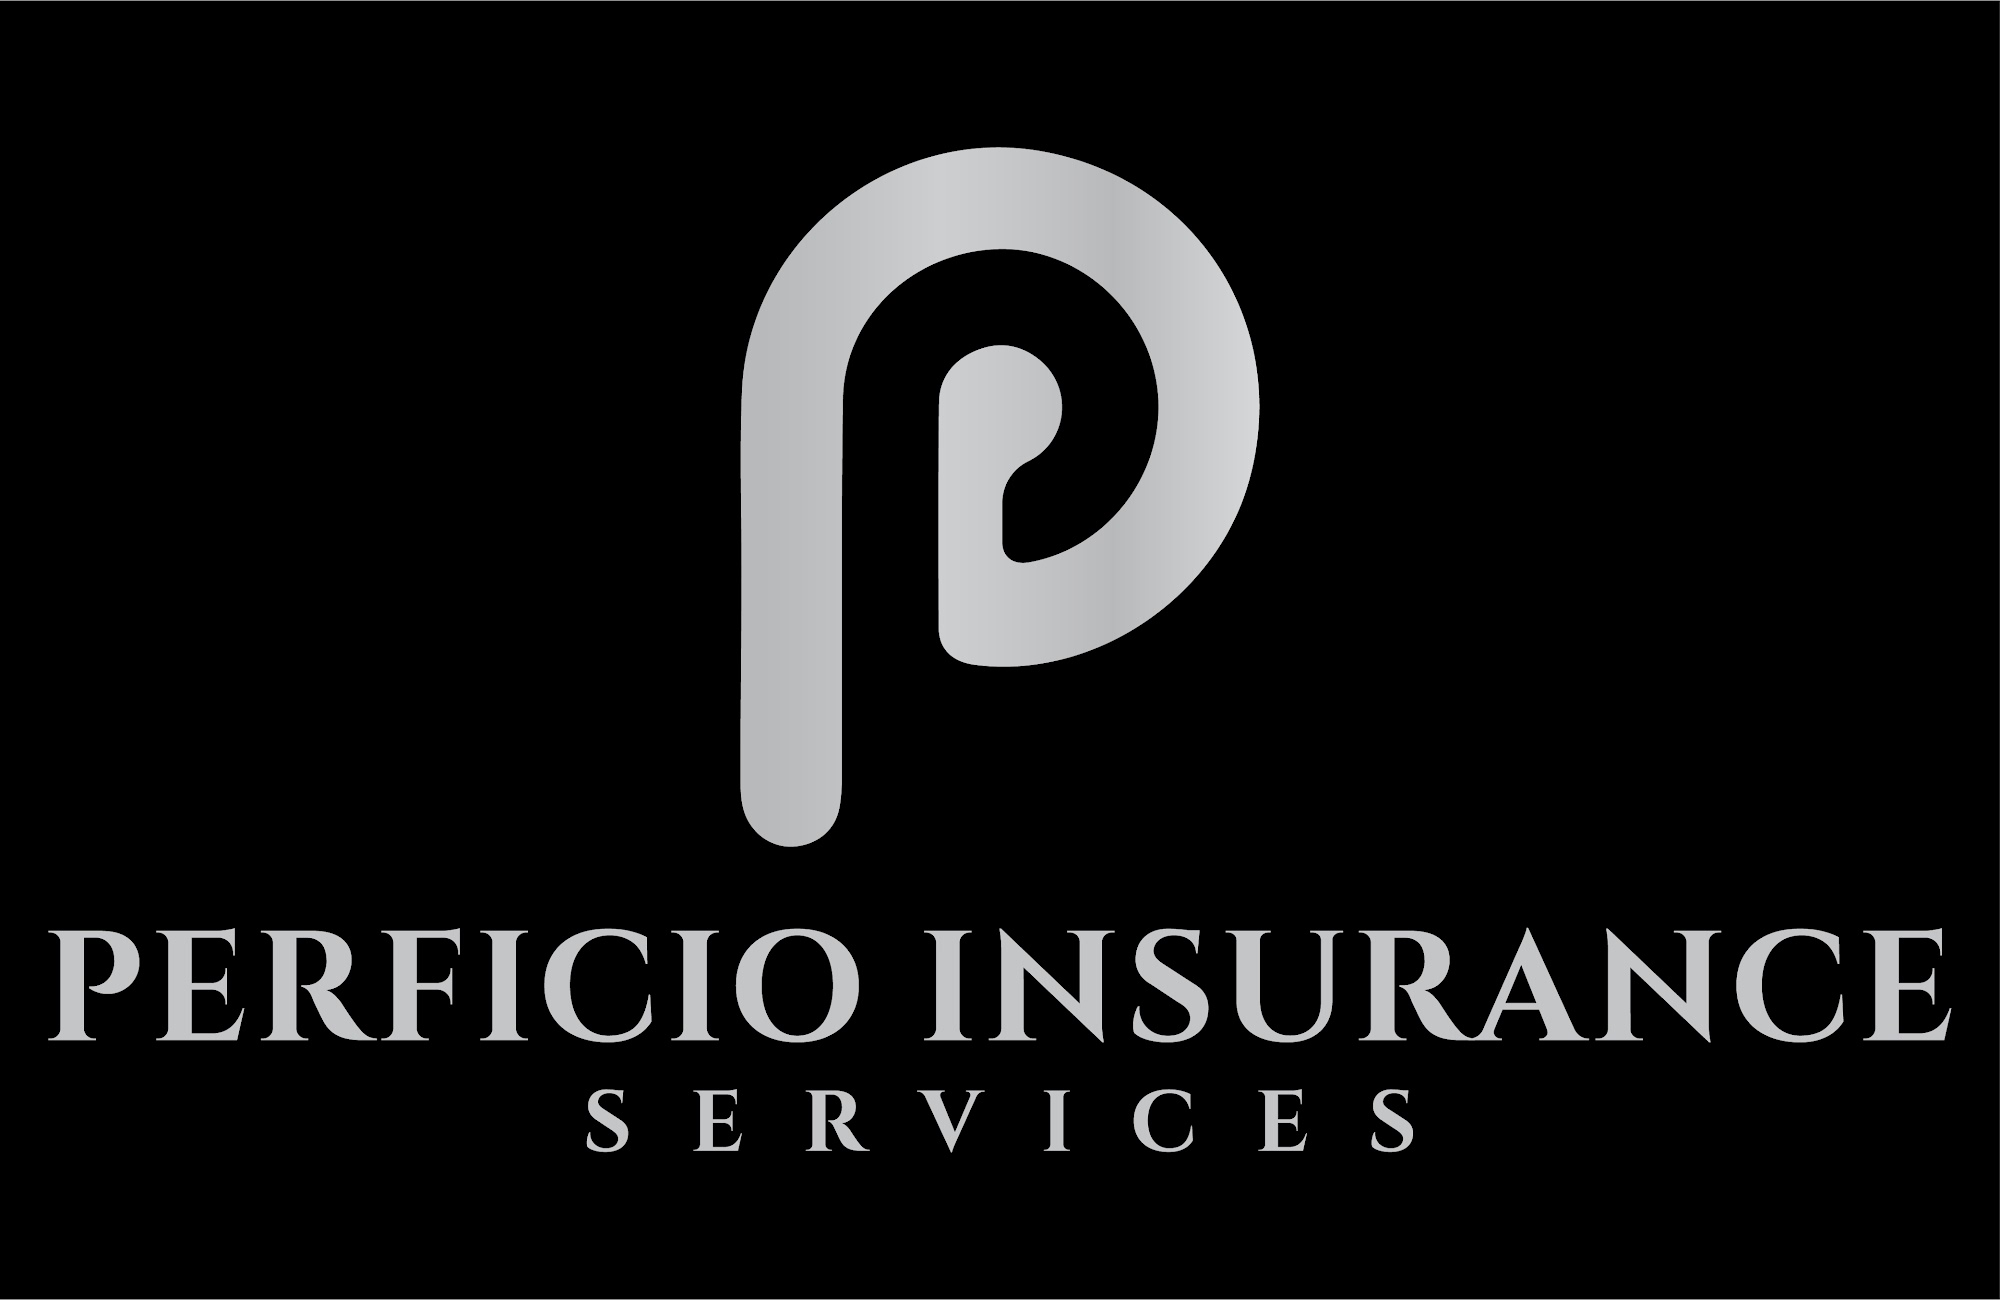 Perficio Insurance Services